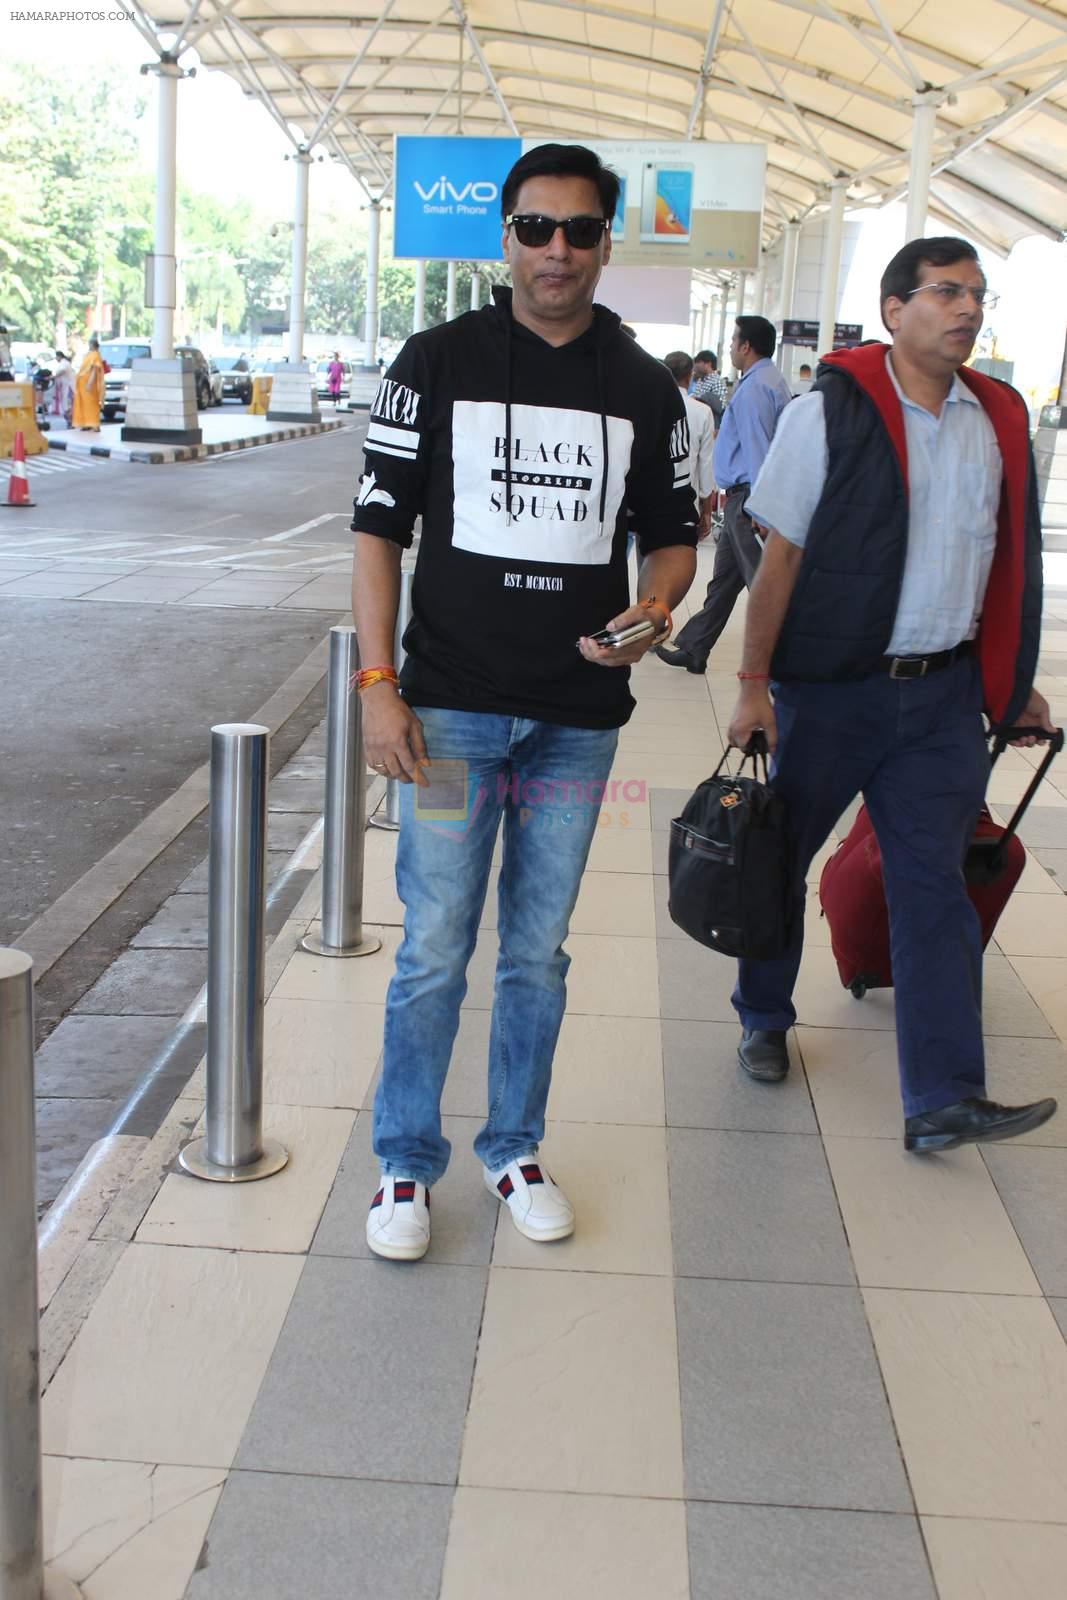 Madhur BHandarkar snapoped at airport on 7th Dec 2015